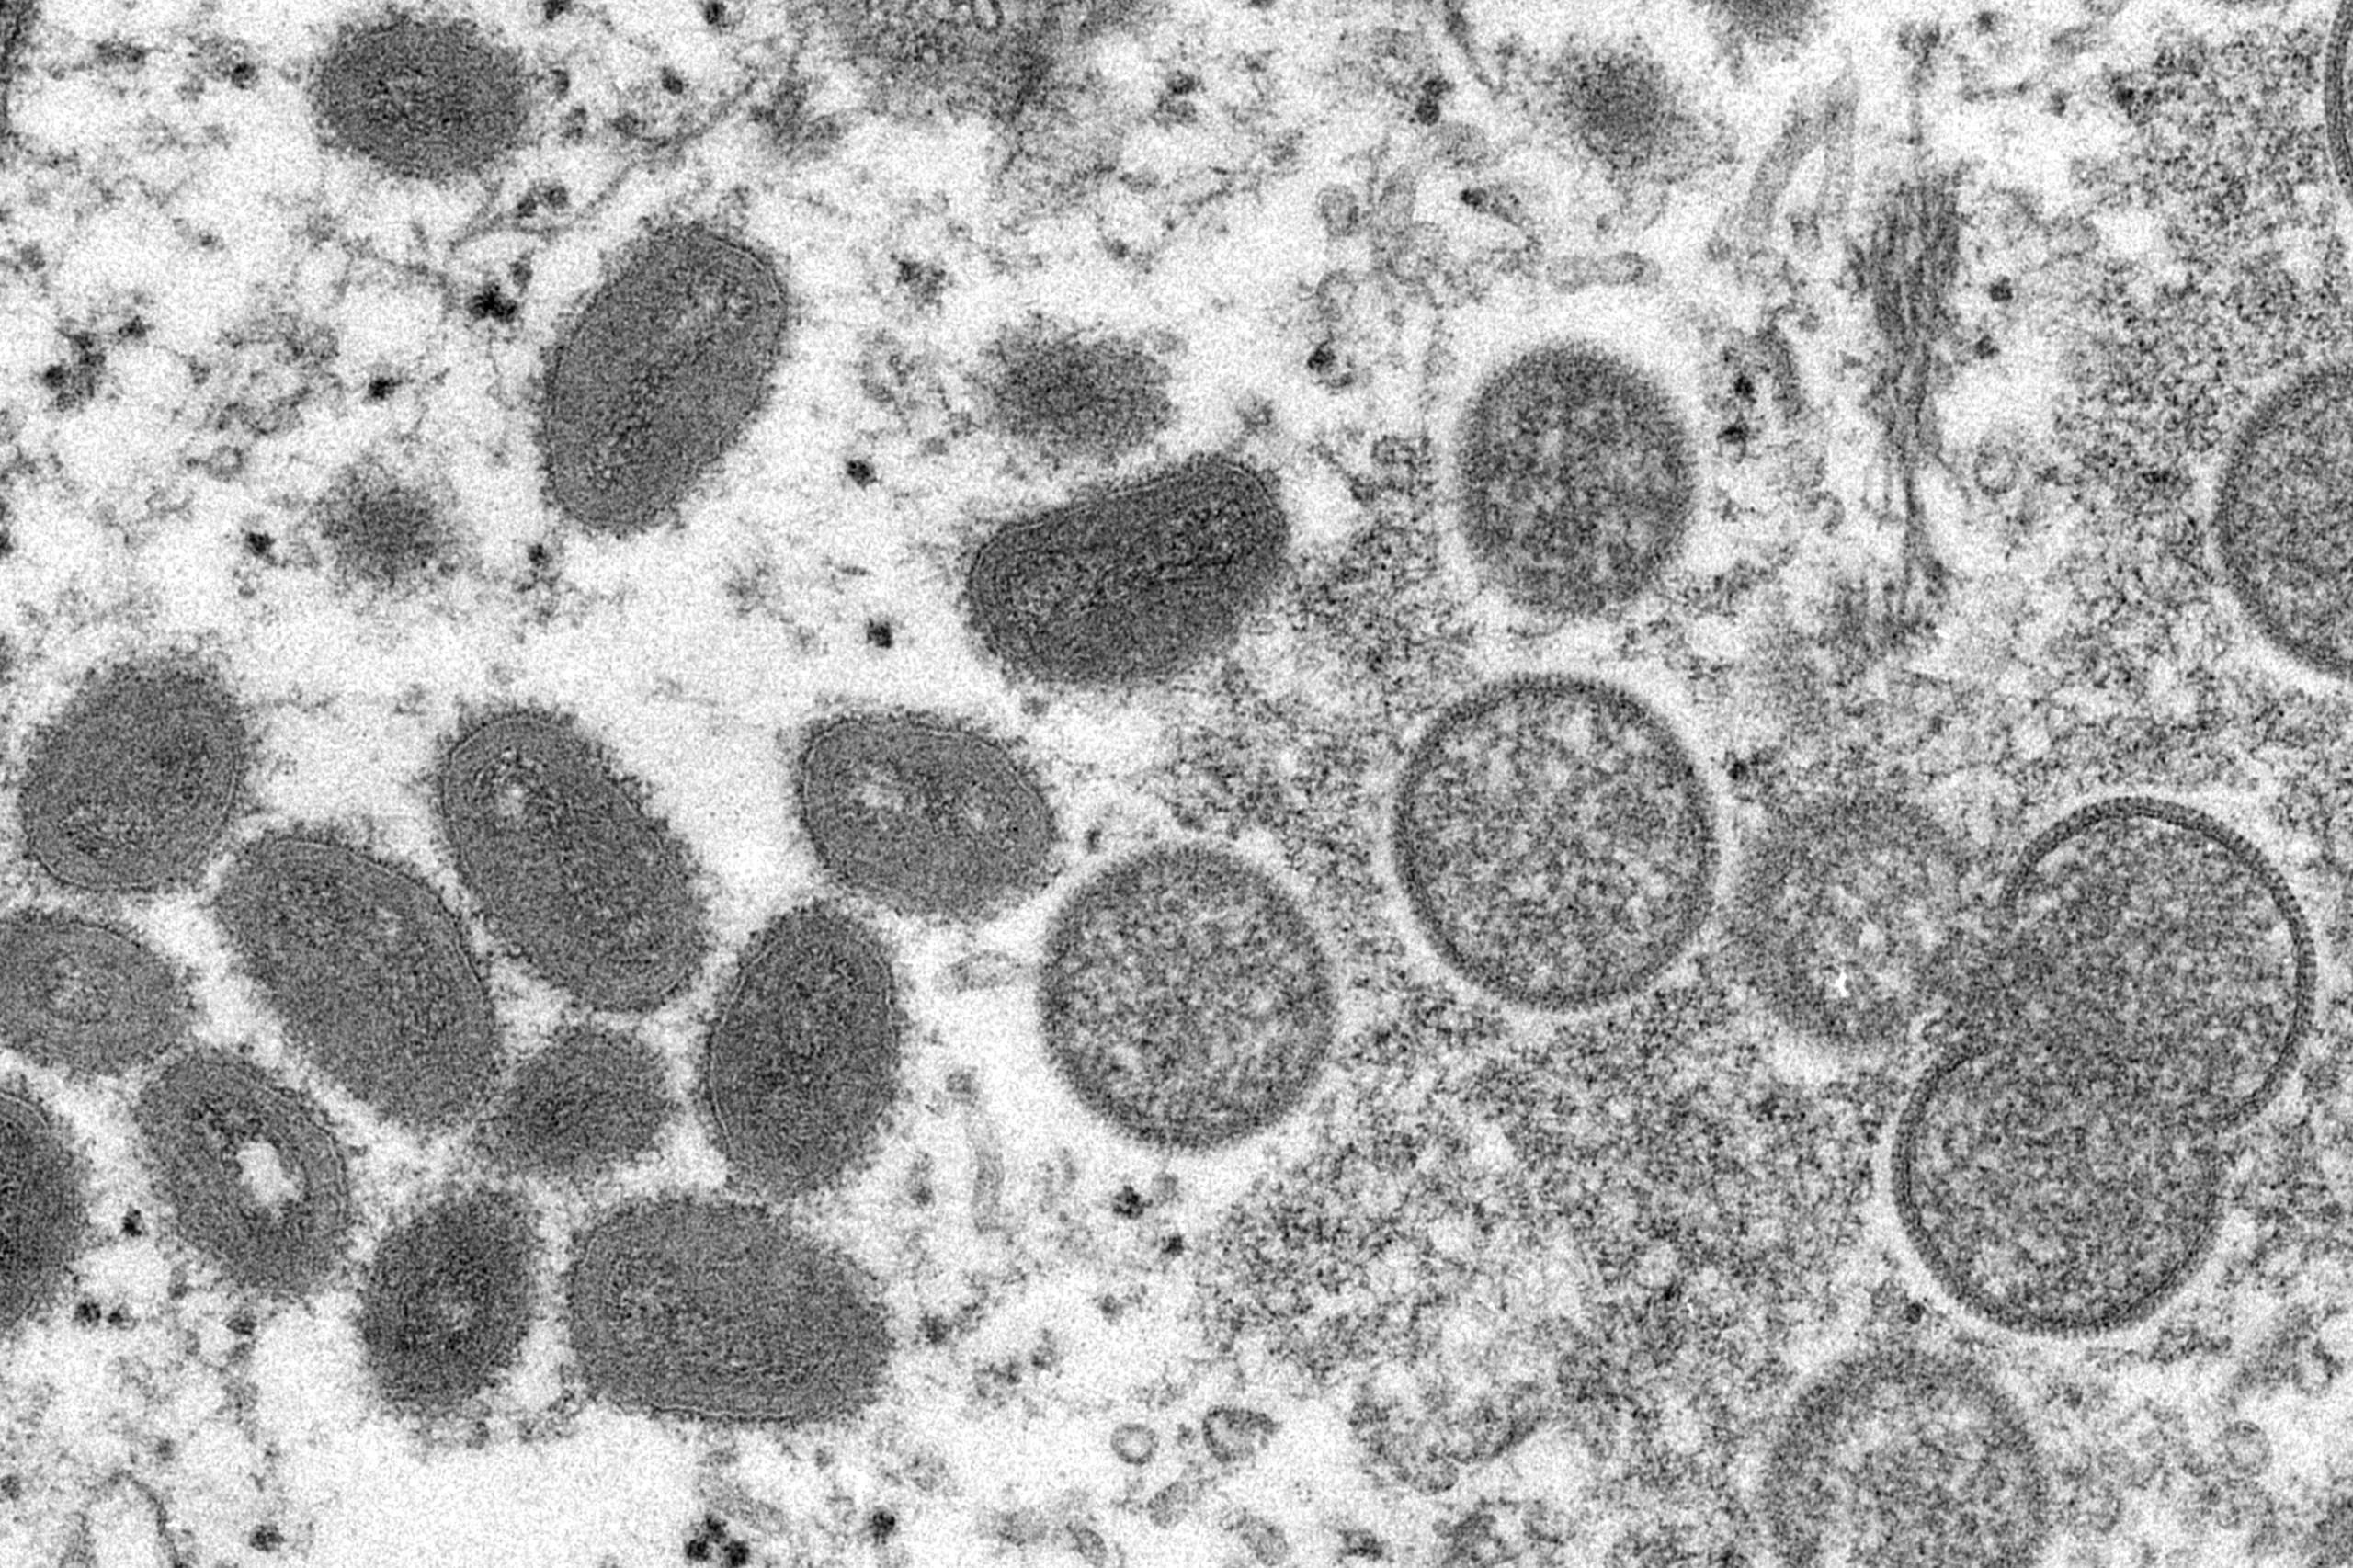 Esta imagen de un microscopio electrónico, proporcionada el 18 de mayo de 2022 por los Centros para el Control y la Prevención de Enfermedades de Estados Unidos, muestra viriones maduros de viruela símica a la izquierda y viriones inmaduros esféricos a la derecha, obtenidos de una muestra de piel humana vinculada con un brote de 2003.